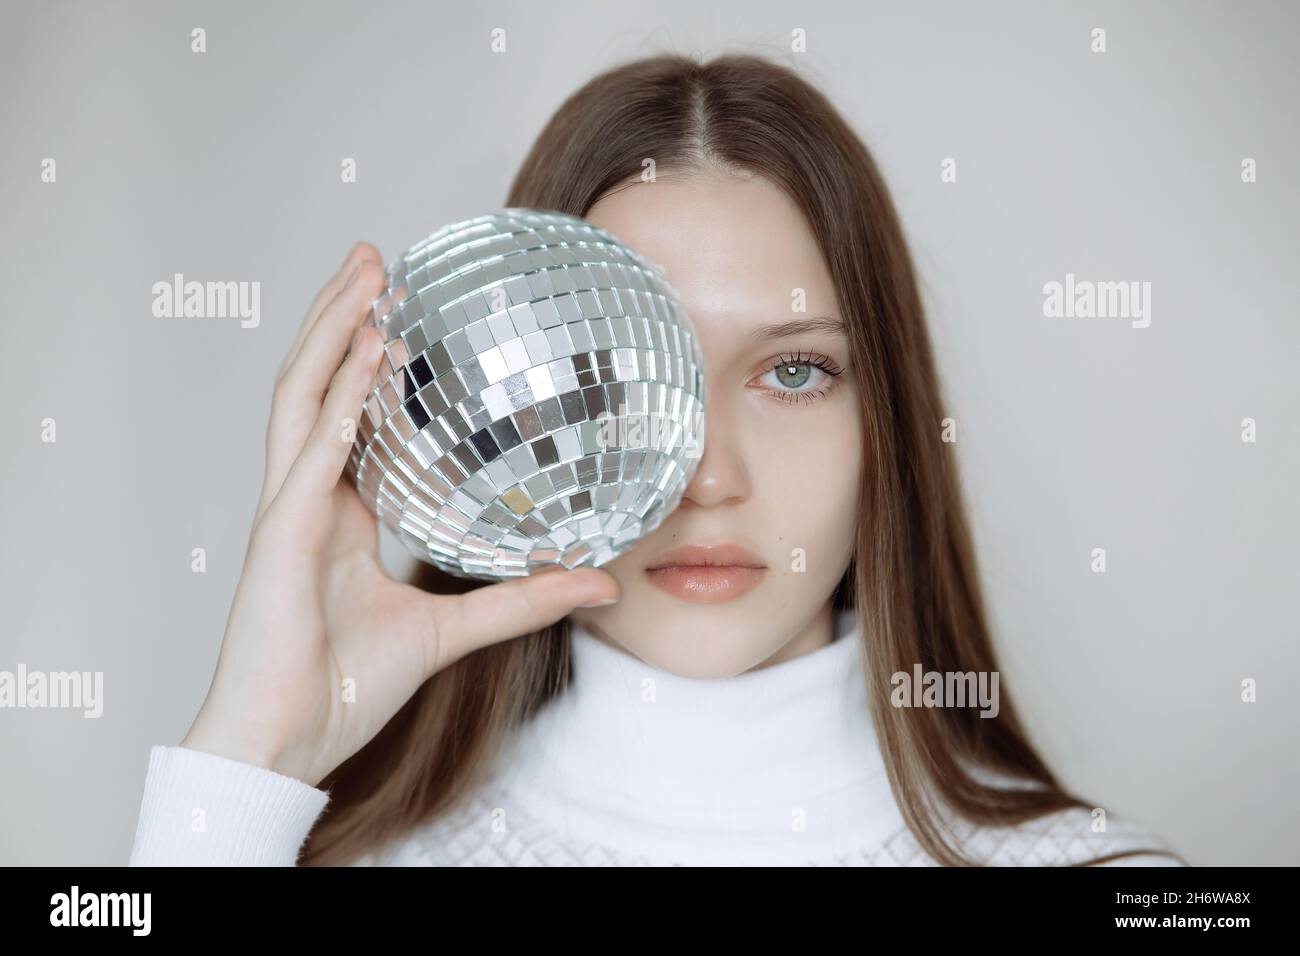 Retrato de moda de una adolescente con una bola de disco, cubriendo su  cara. Una chica dulce con ojos expresivos y un jersey blanco sostiene una  esfera de espejo Fotografía de stock -